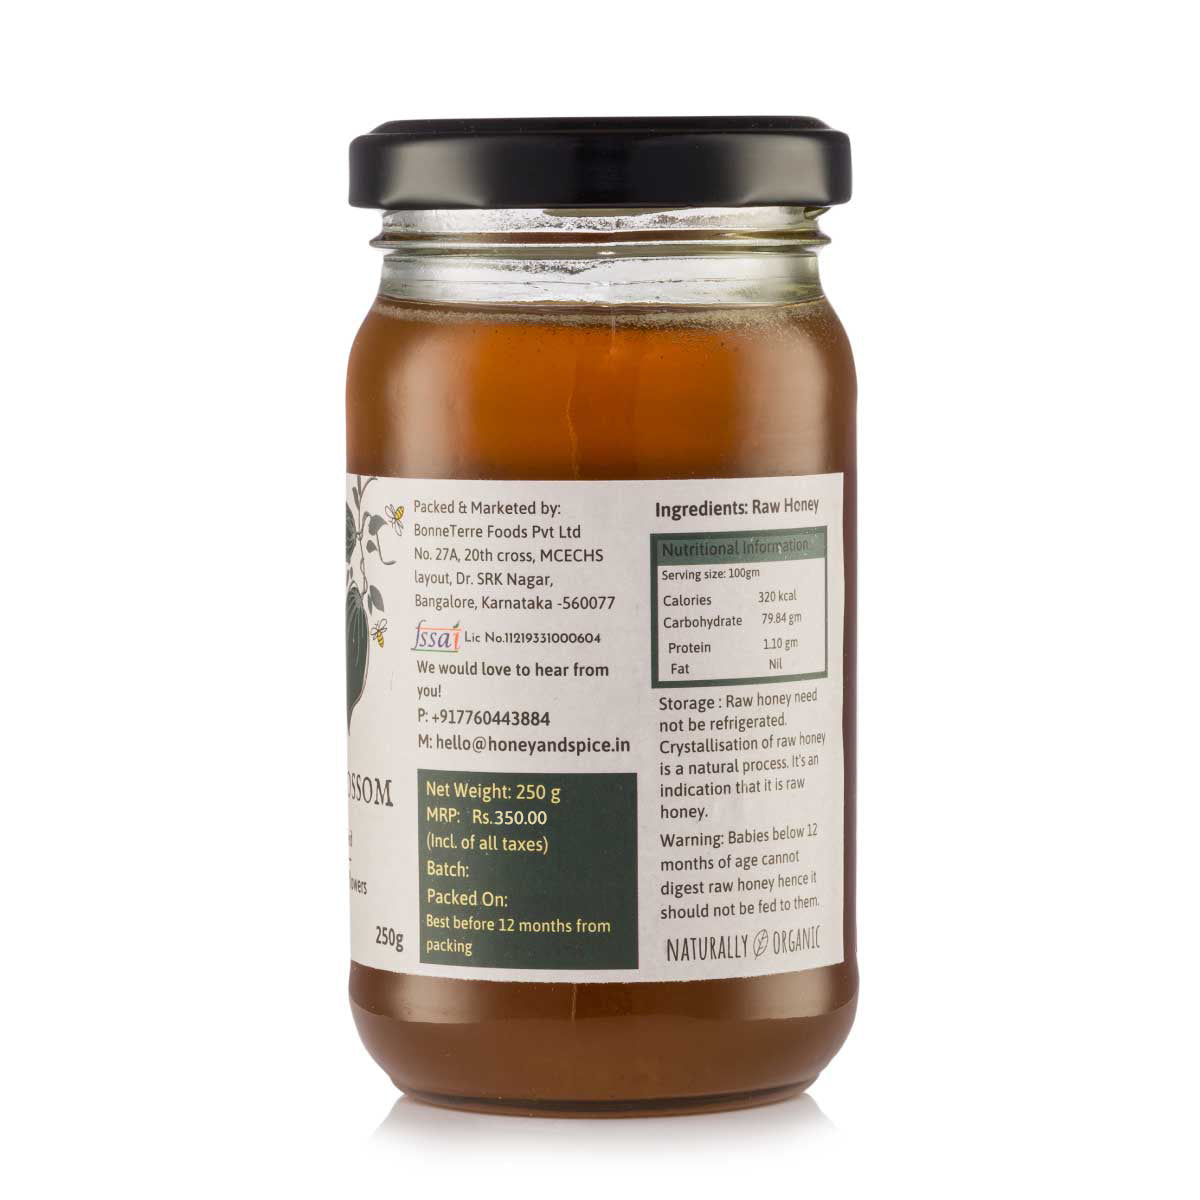 
                  
                    Honey and Spice Tropical Blossom Honey (250g)
                  
                